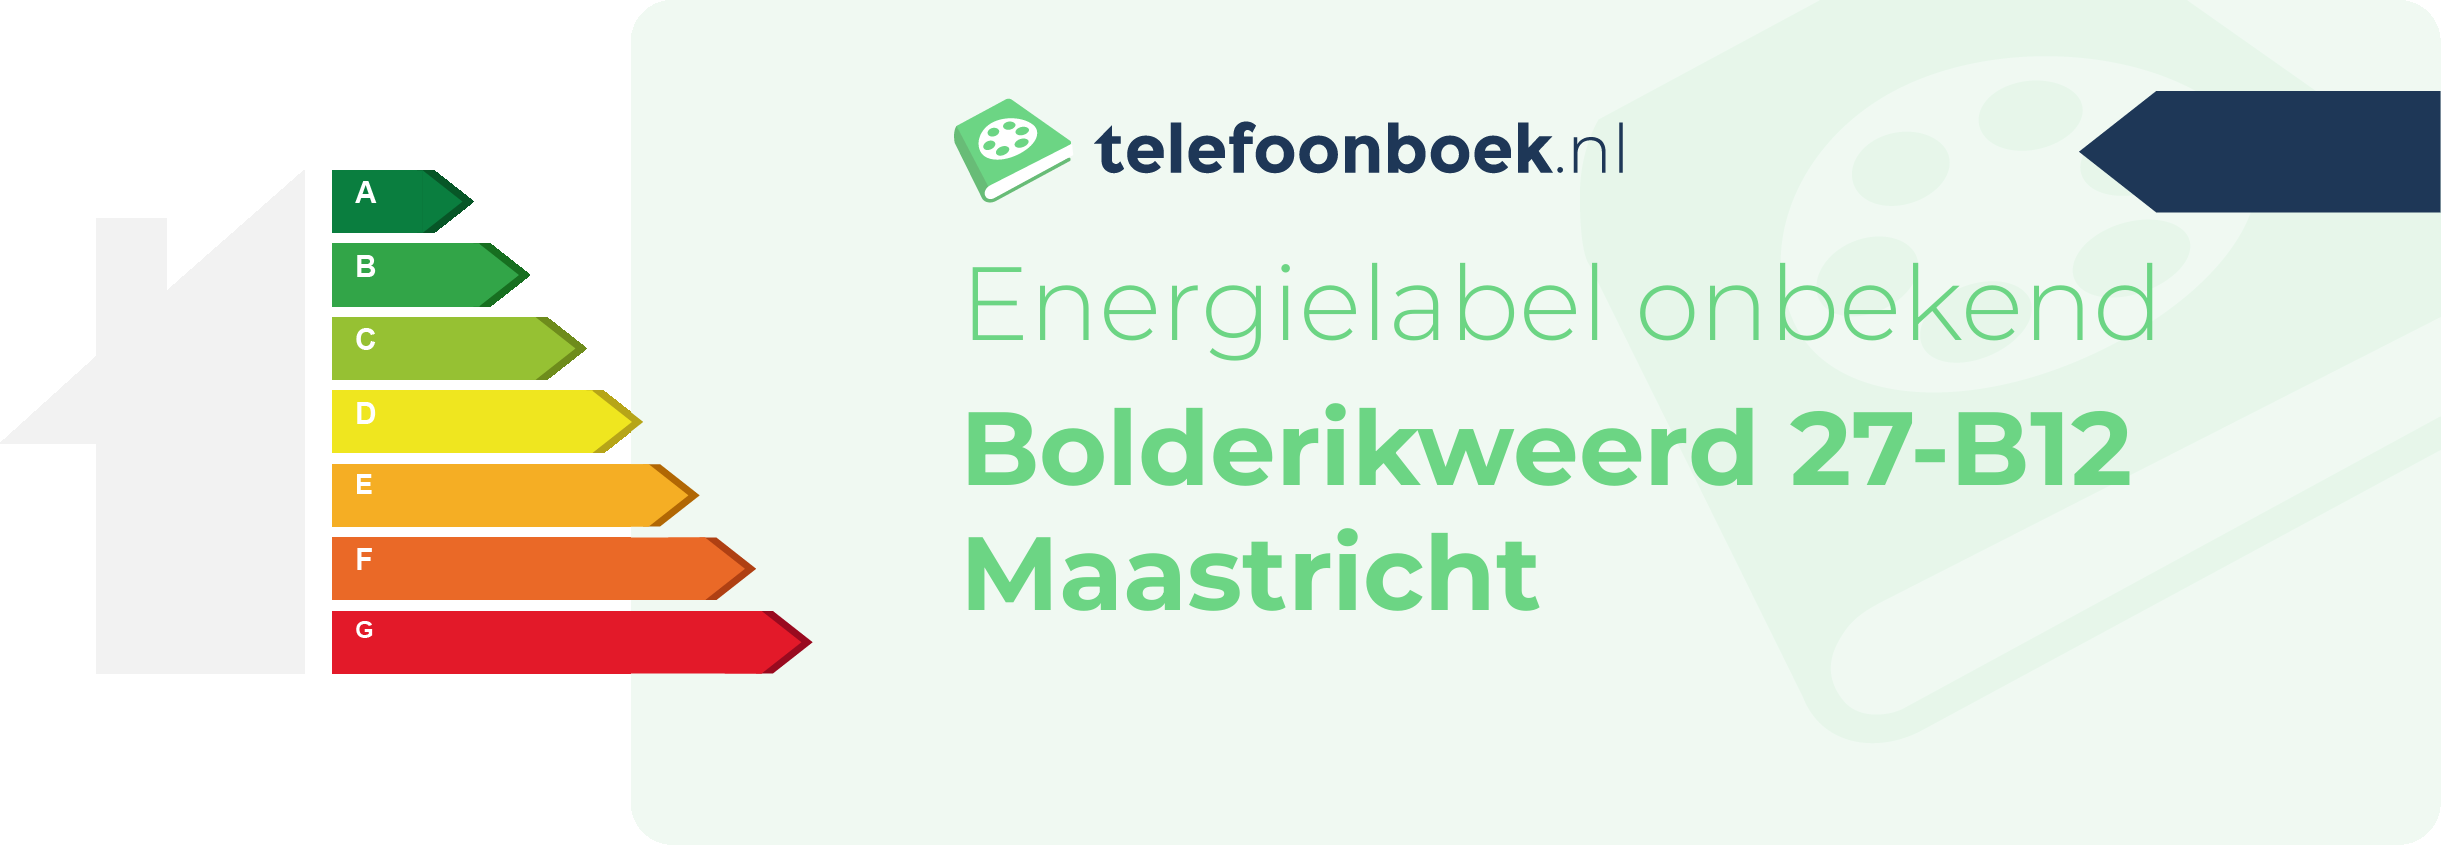 Energielabel Bolderikweerd 27-B12 Maastricht